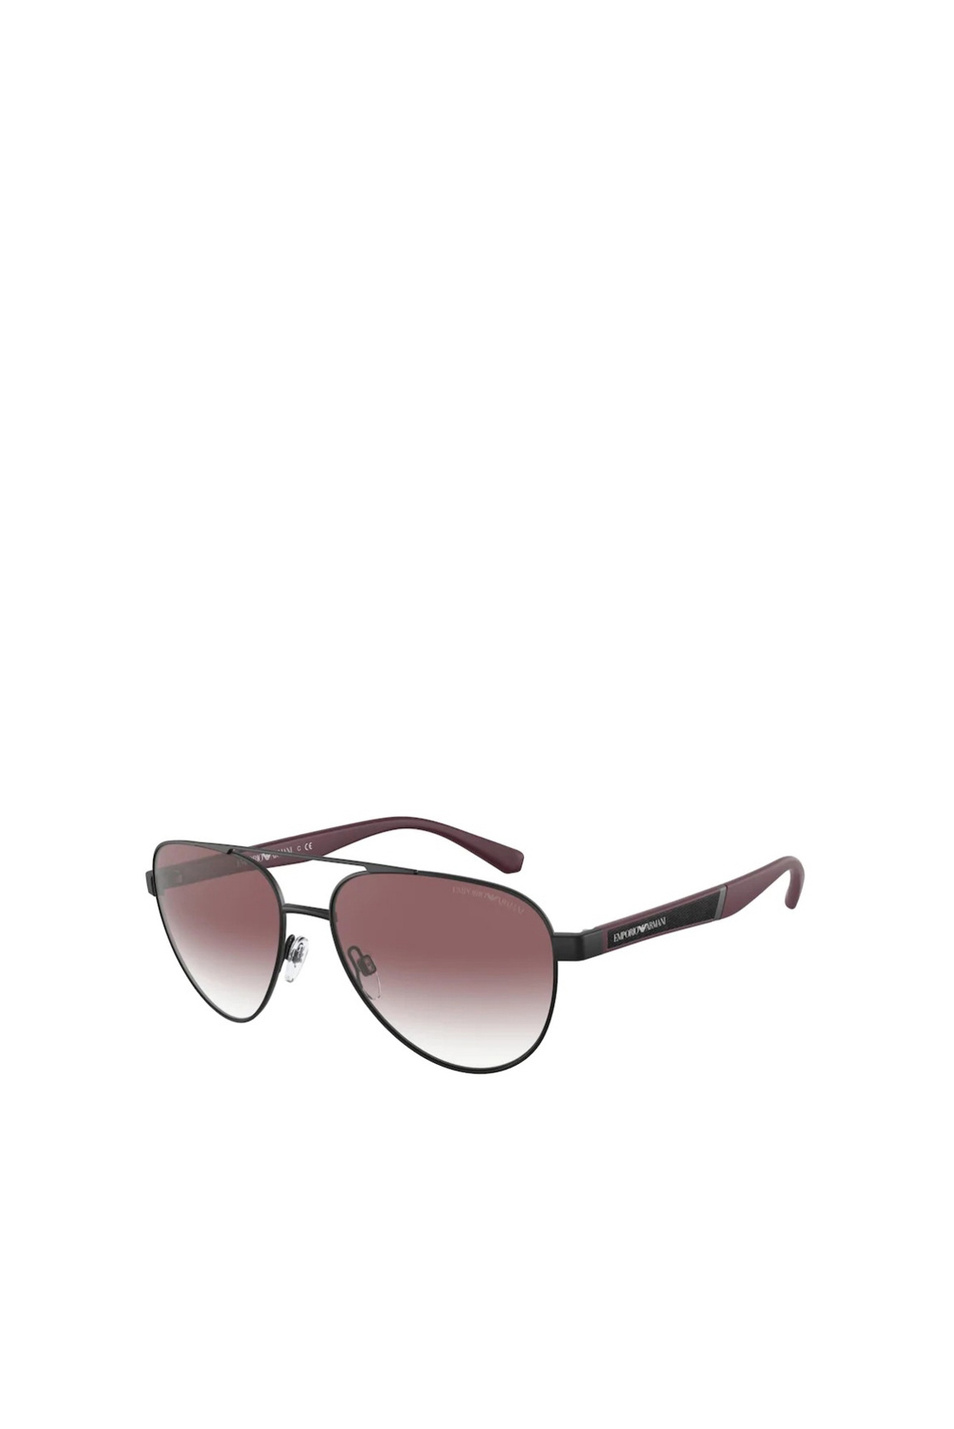 Emporio Armani Солнцезащитные очки 0EA2105 59 (цвет ), артикул 0EA2105 | Фото 1